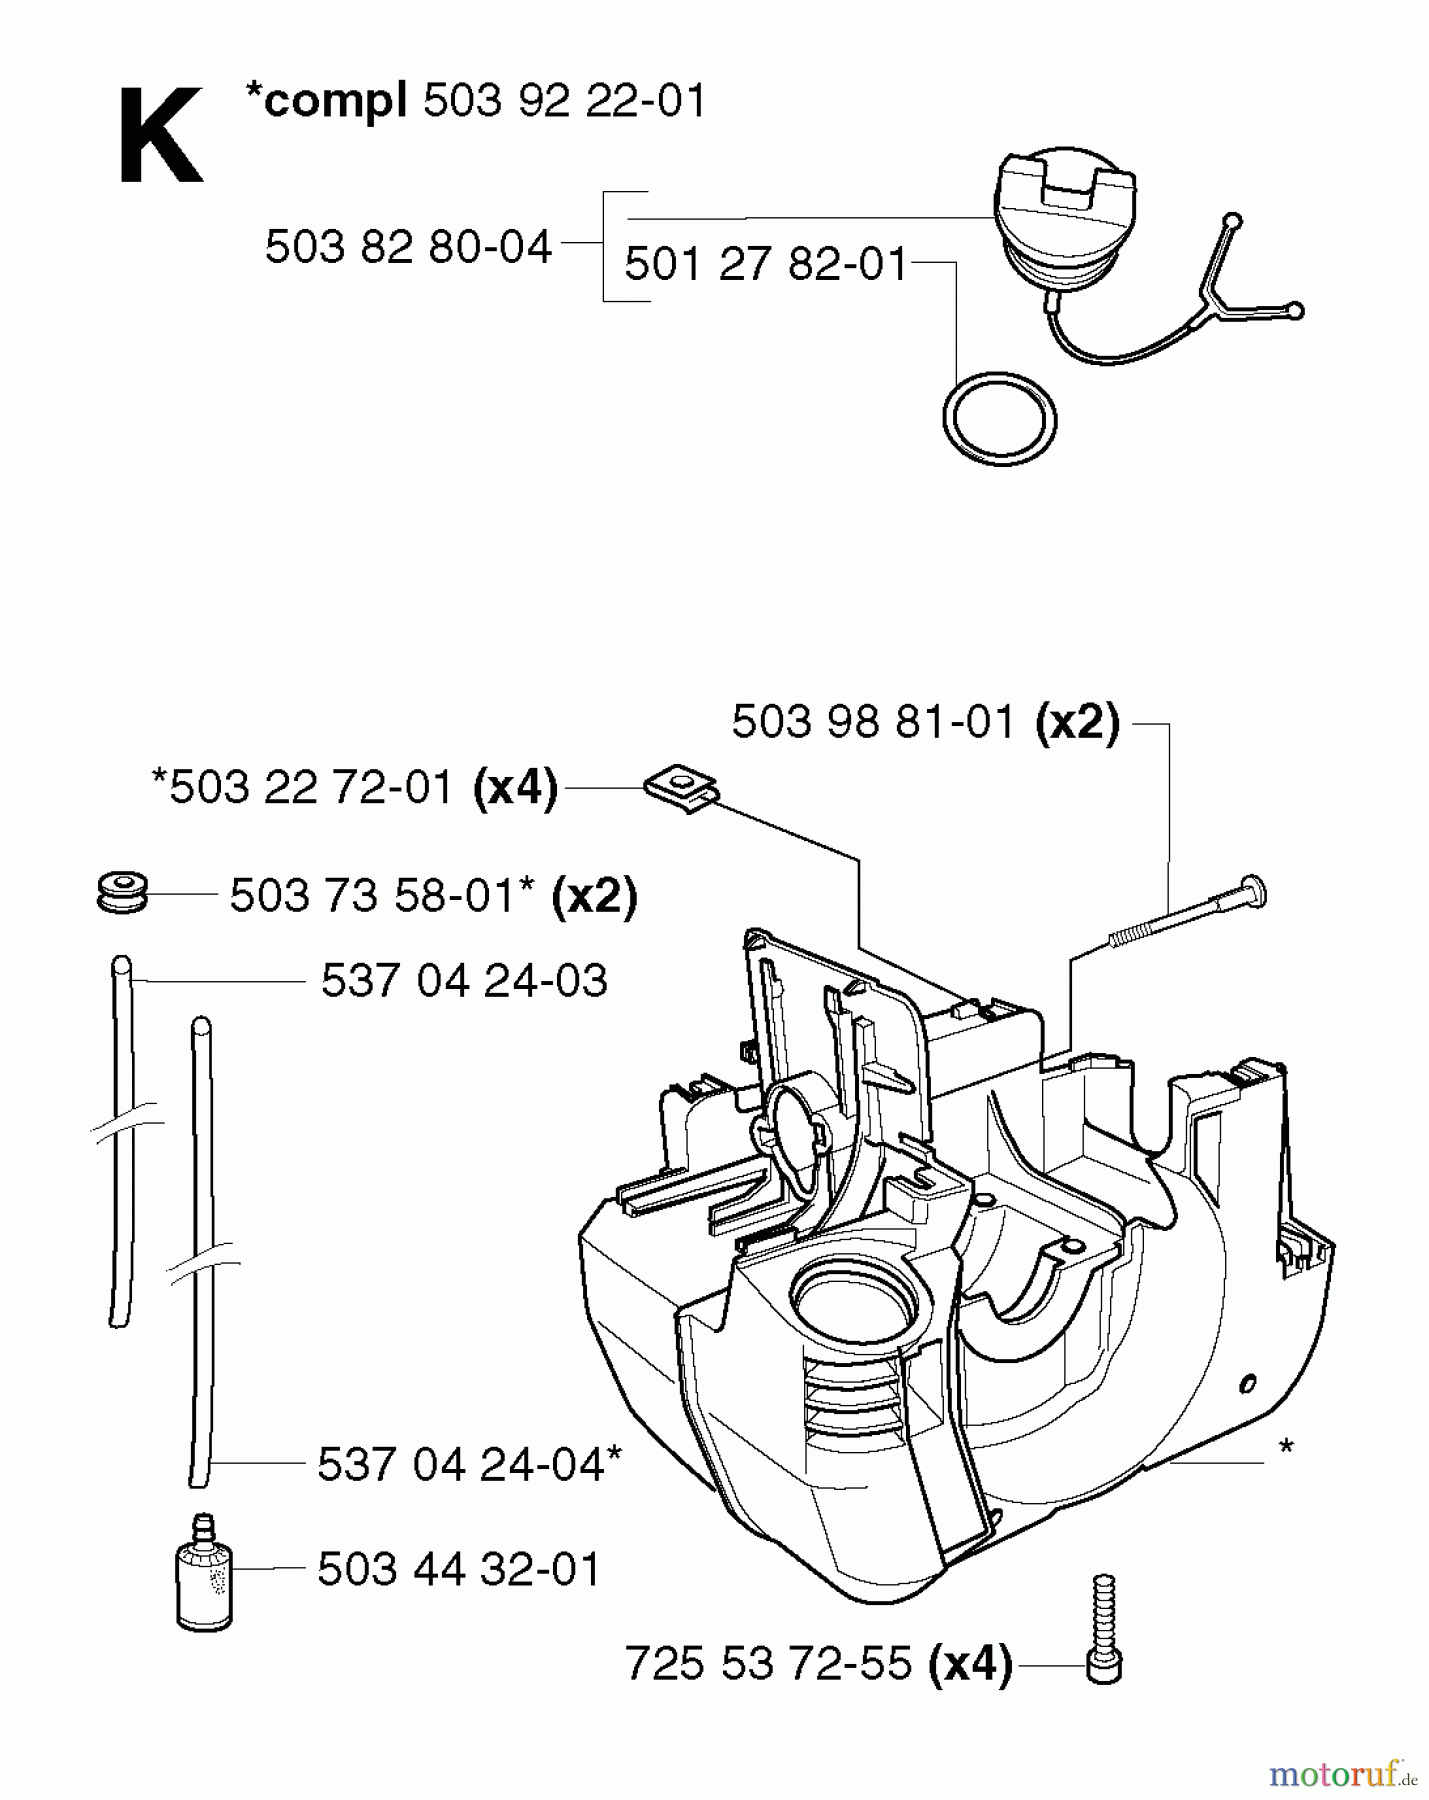  Jonsered Motorsensen, Trimmer GR2032 - Jonsered String/Brush Trimmer (2002-08) CRANKCASE